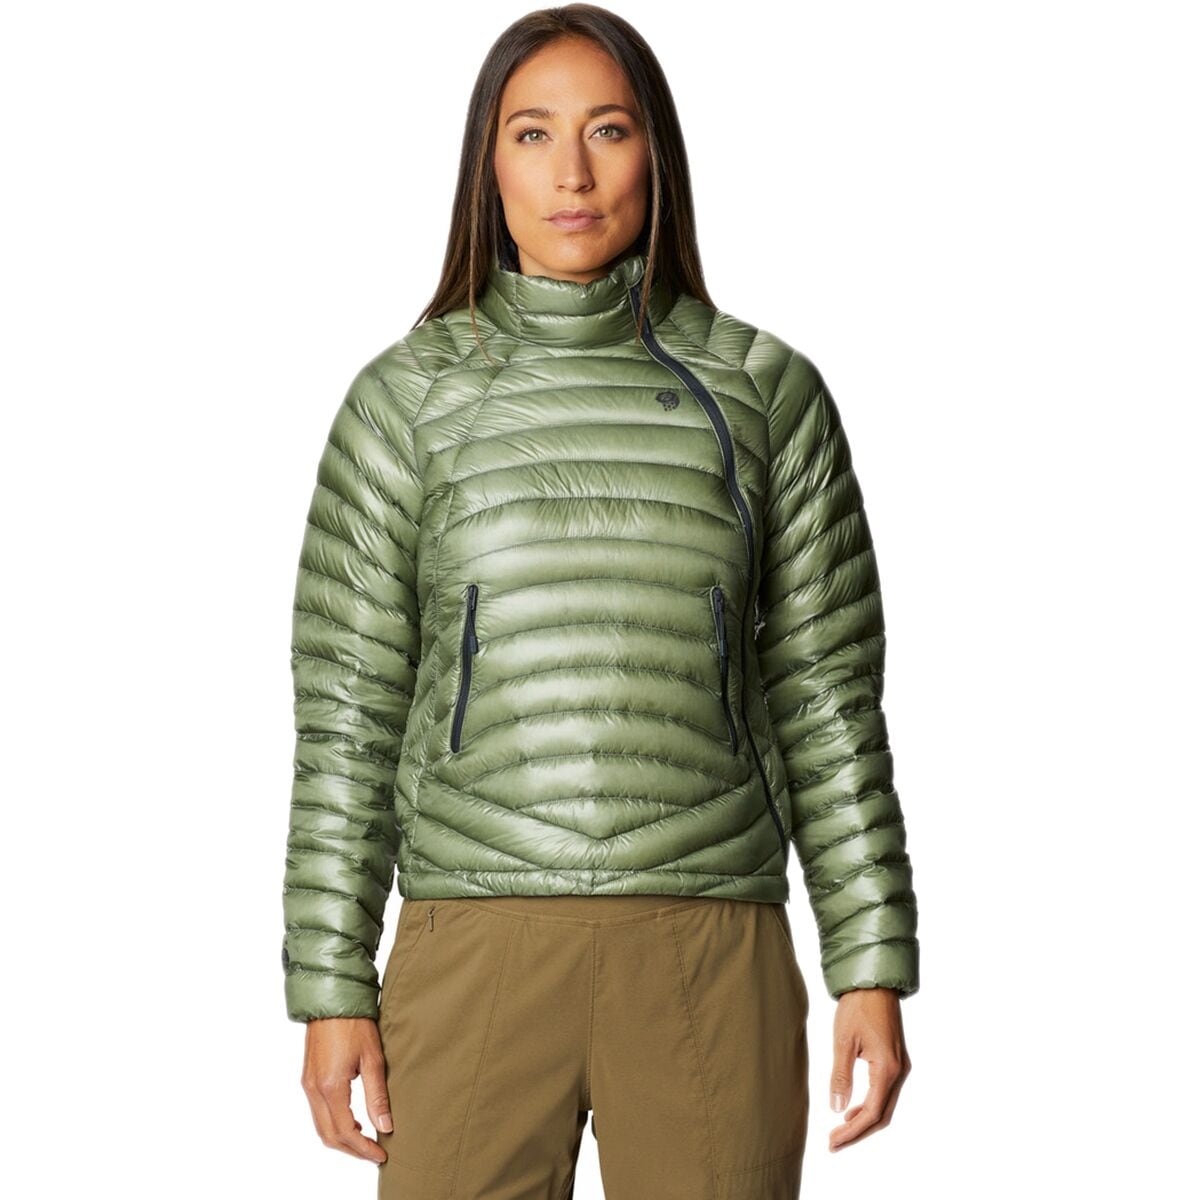 Mountain Hardwear - Women's Jackets, Coats, Parkas. Sustainable 